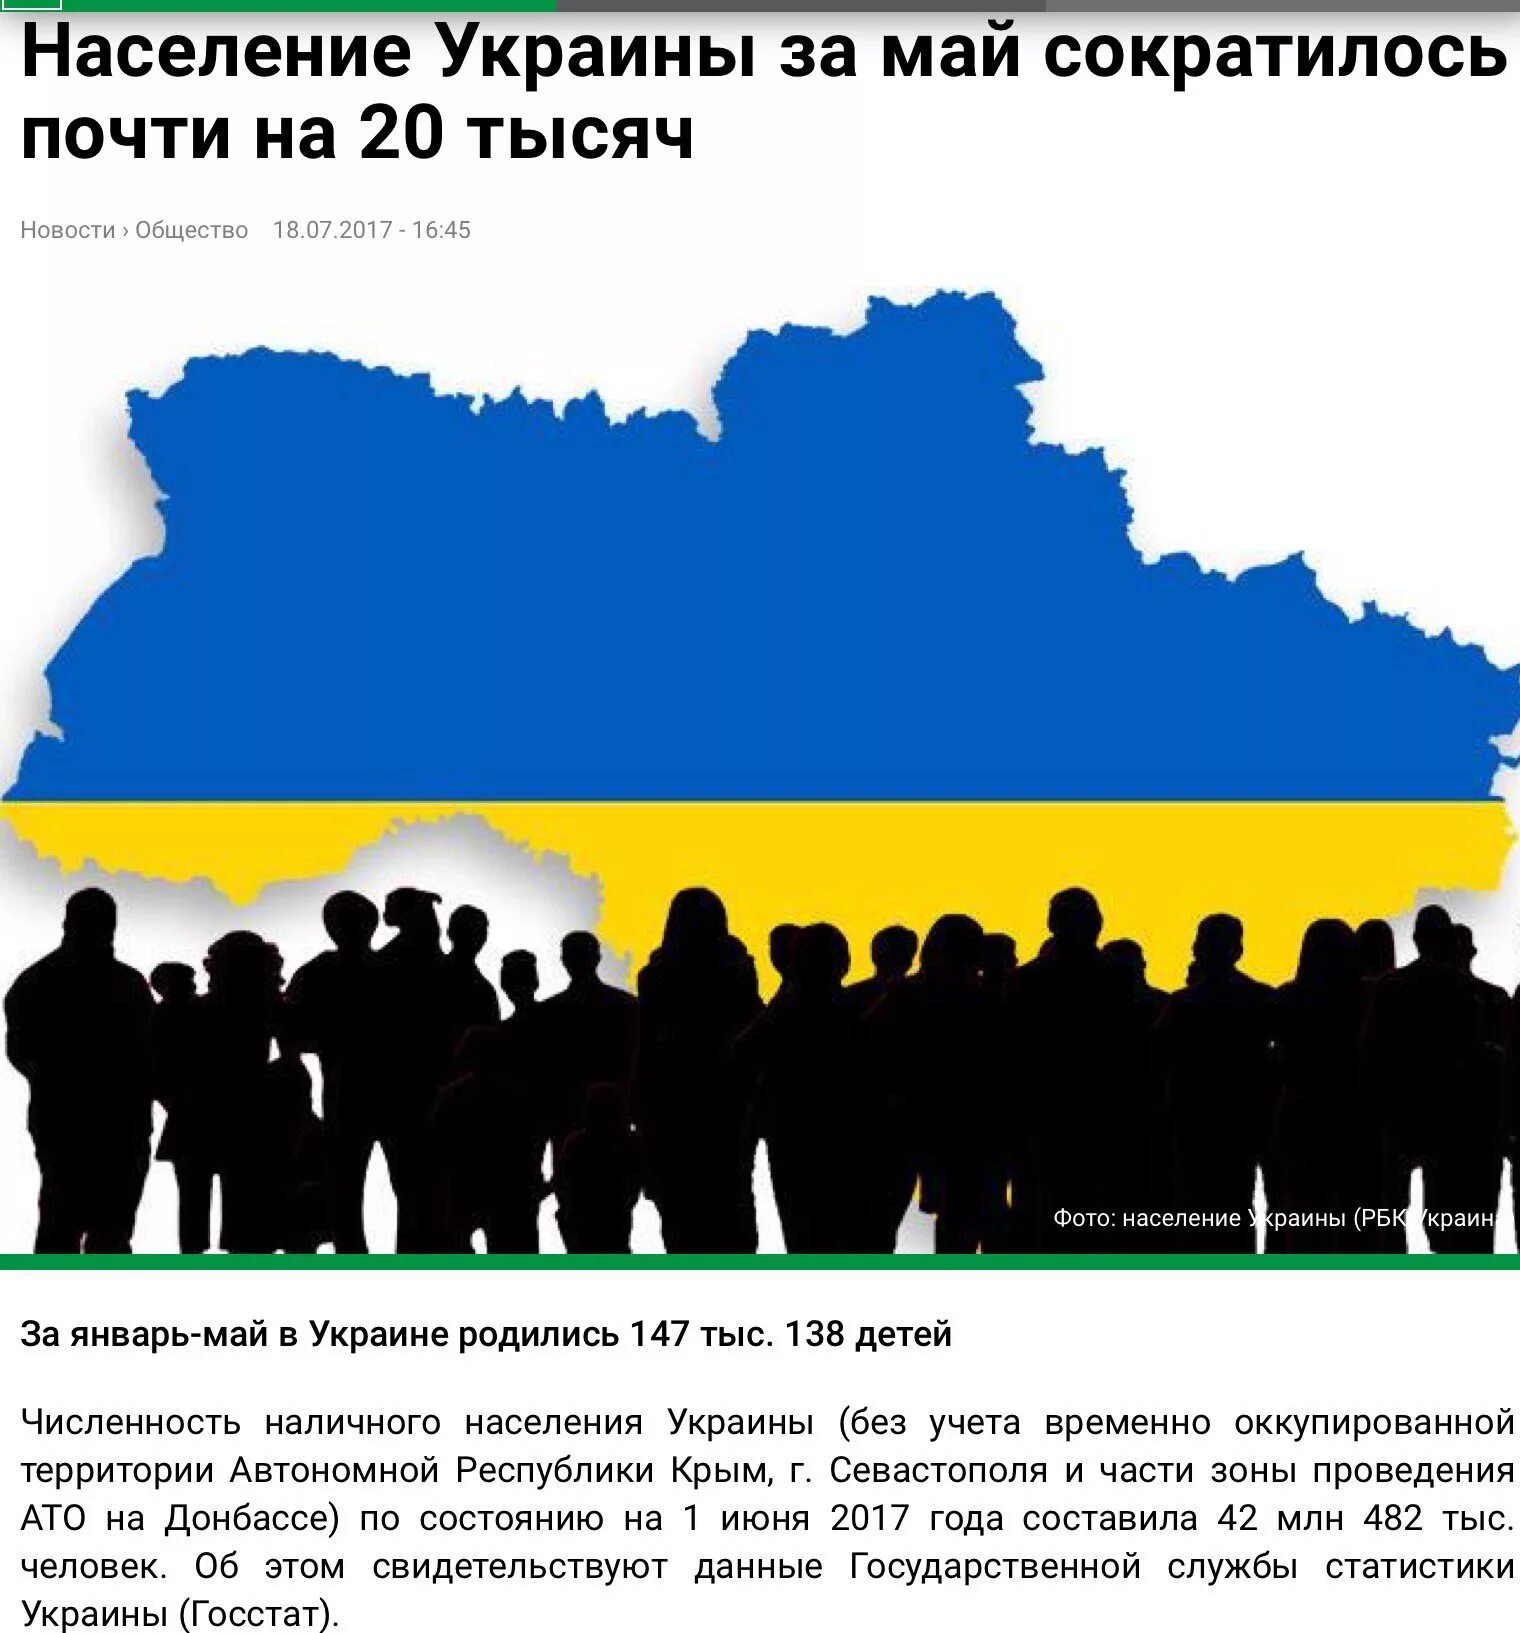 Население украины против россии. Население Украины. Украина население Украины. Численность населения Украины. Население Украины сейчас.